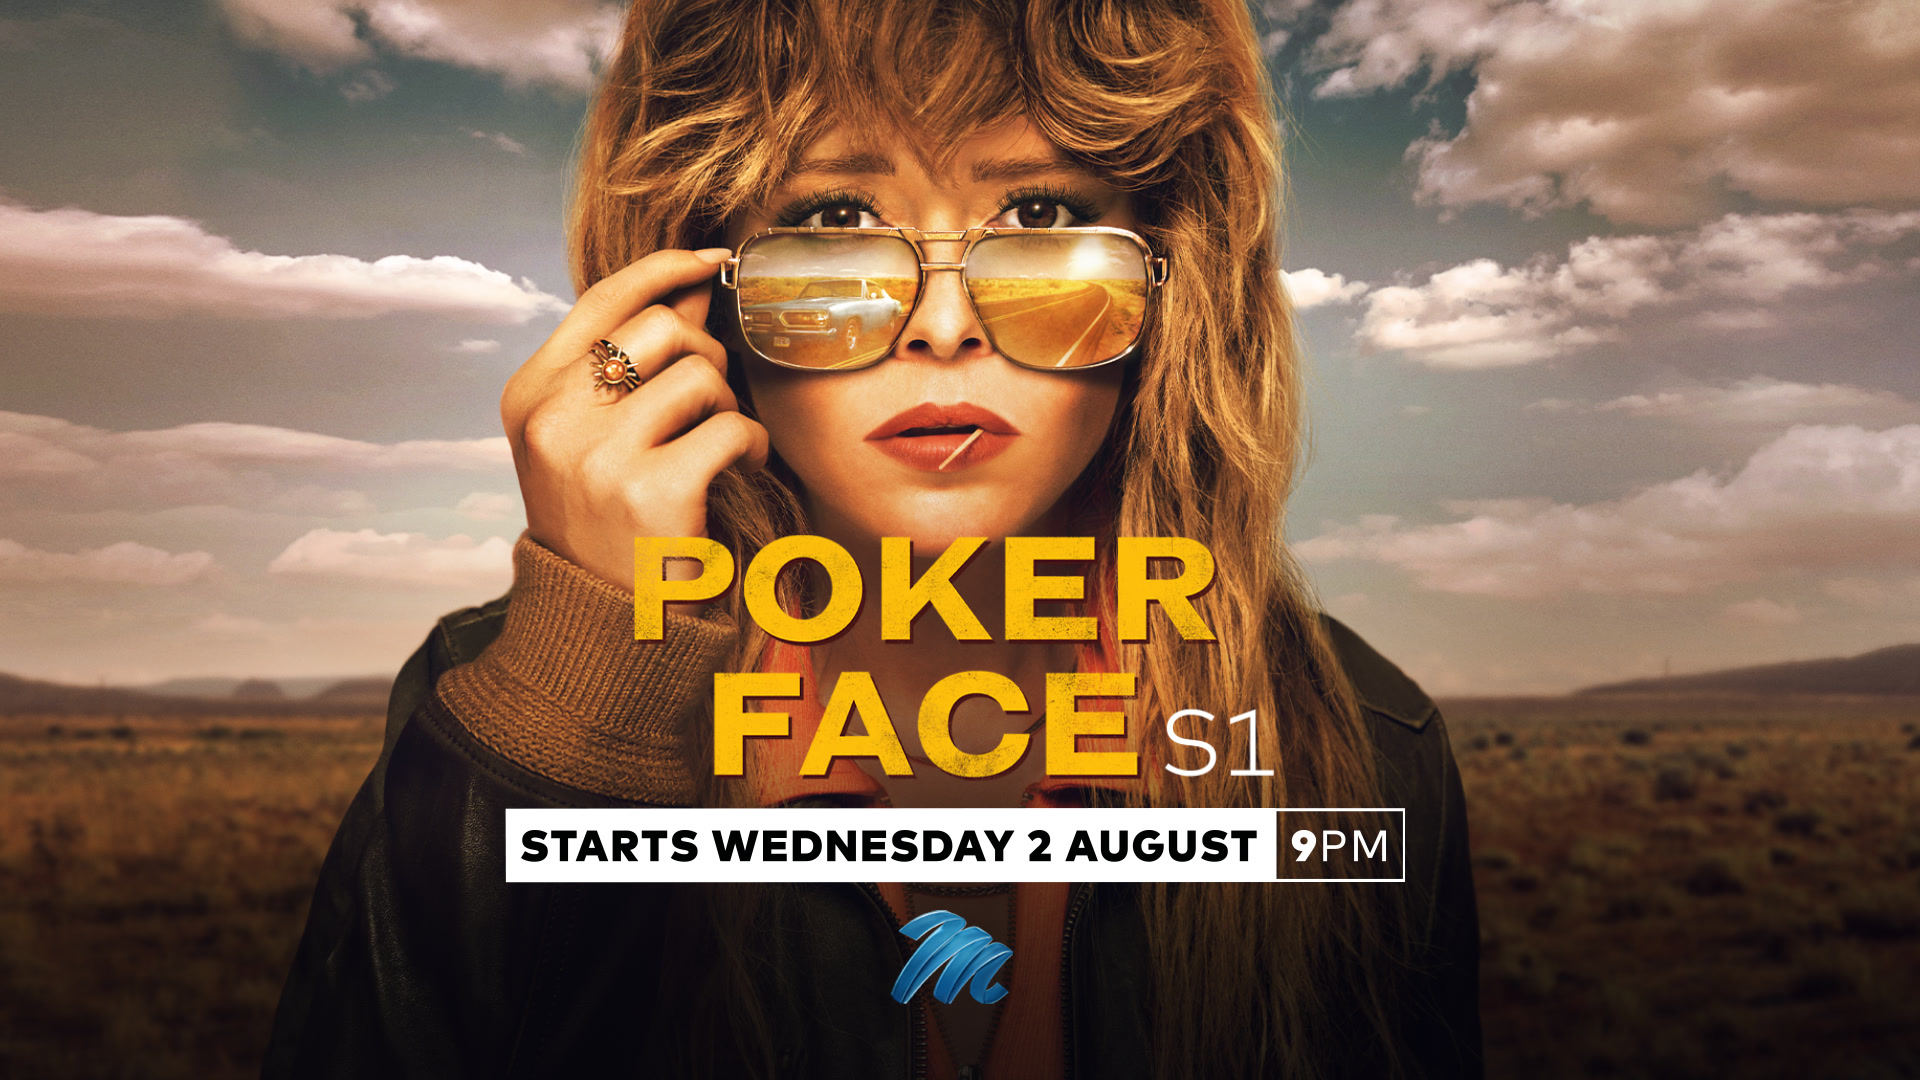 Teaser trailer drops for Rian Johnson's mystery series 'Poker Face